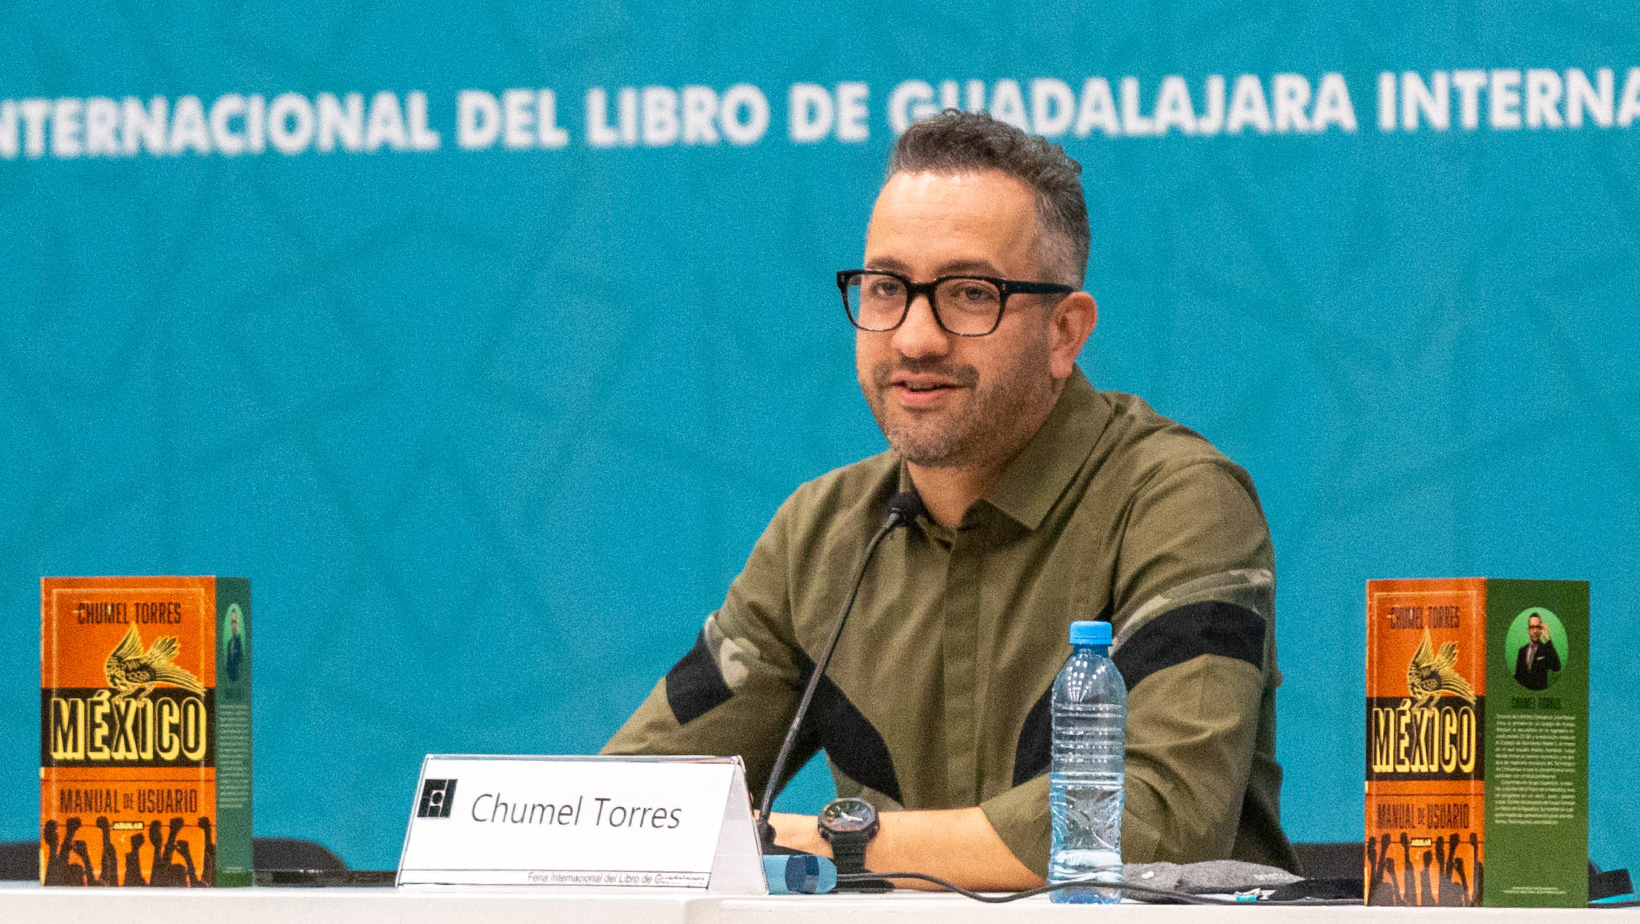 “México: Manual de usuario” de Chumel Torres, un retrato de los mexicanos entre el humor ácido y político